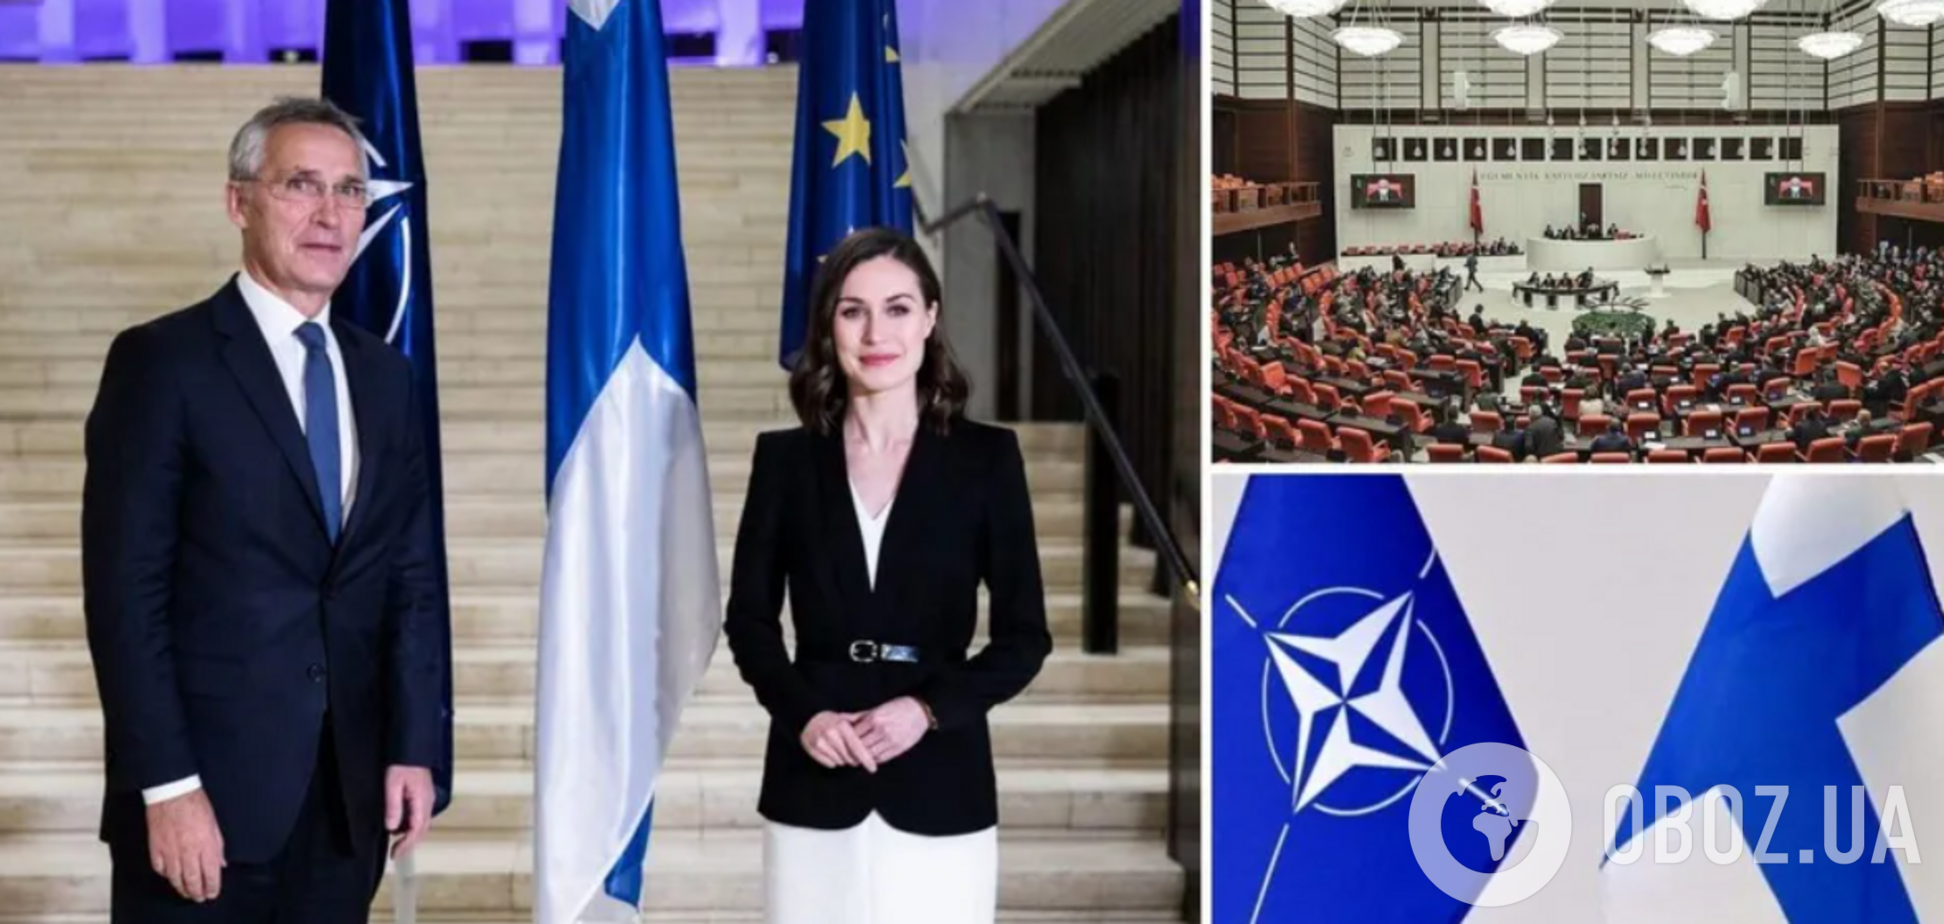 Генасамблея парламенту Туреччини ратифікувала протокол про вступ Фінляндії до НАТО